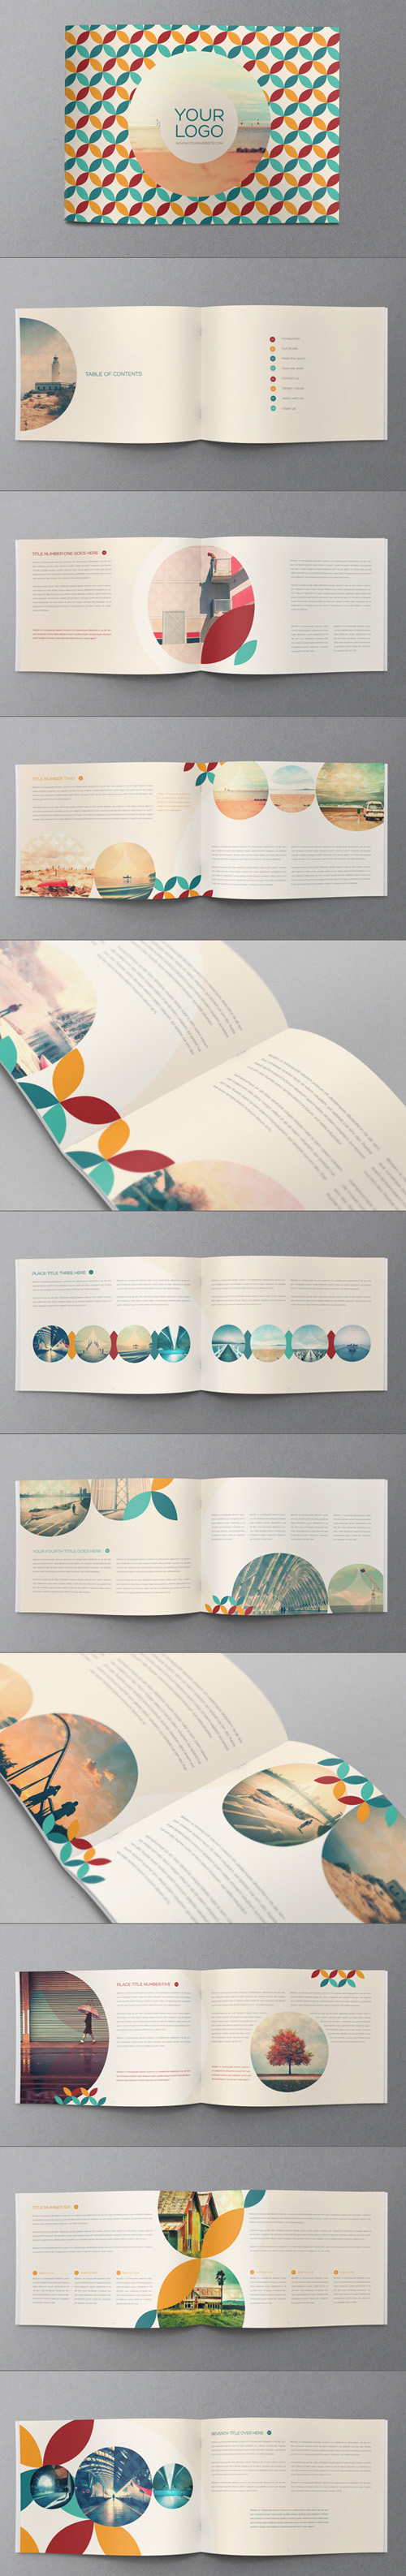 15个创意风格企业画册设计欣赏,PS教程,图老师教程网